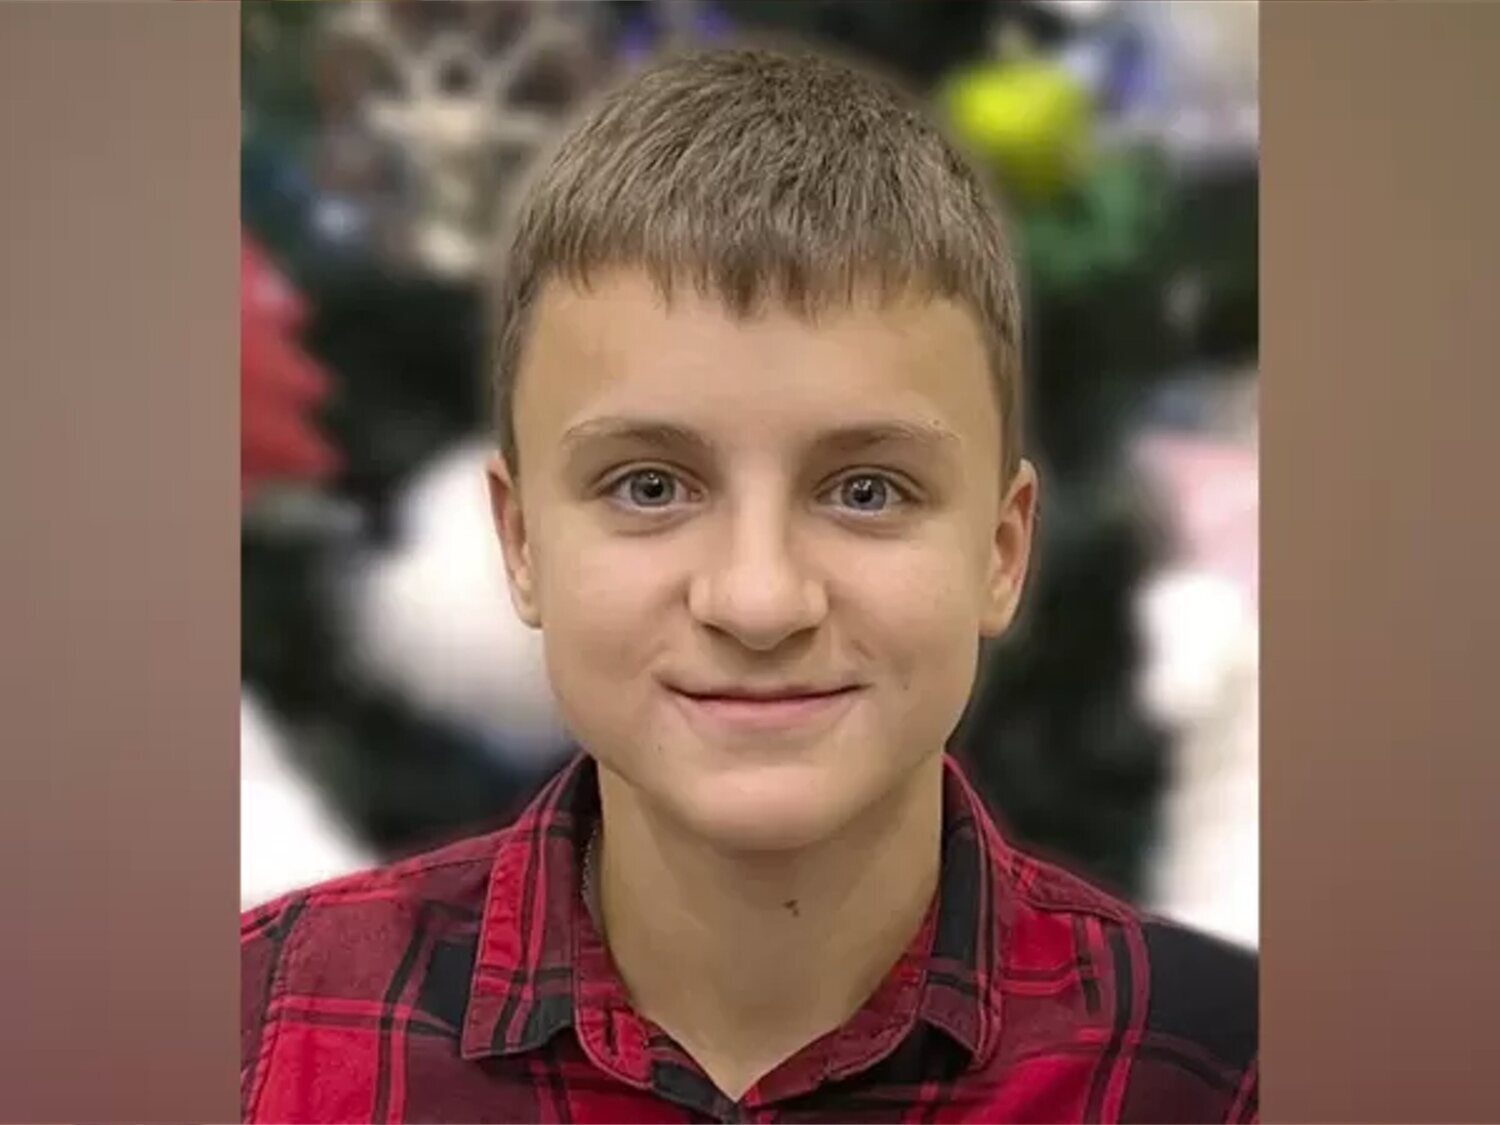 Elisei, asesinado a tiros con 13 años por las tropas rusas en Ucrania cuando huía con su familia